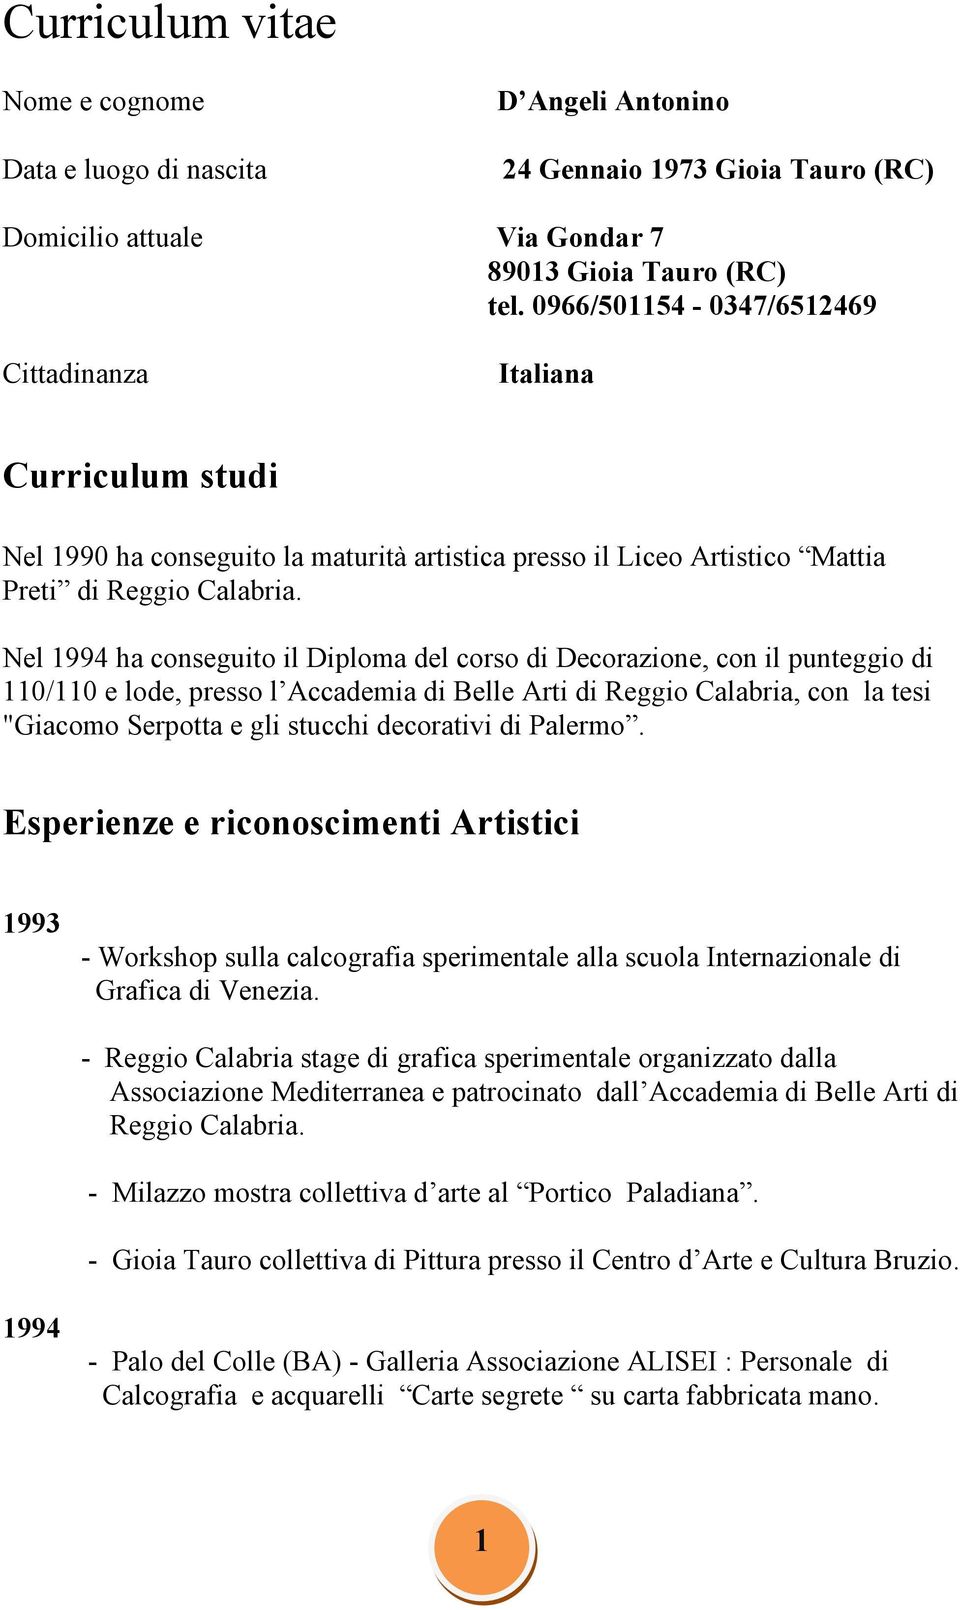 Nel 1994 ha conseguito il Diploma del corso di Decorazione, con il punteggio di 110/110 e lode, presso l Accademia di Belle Arti di Reggio Calabria, con la tesi "Giacomo Serpotta e gli stucchi